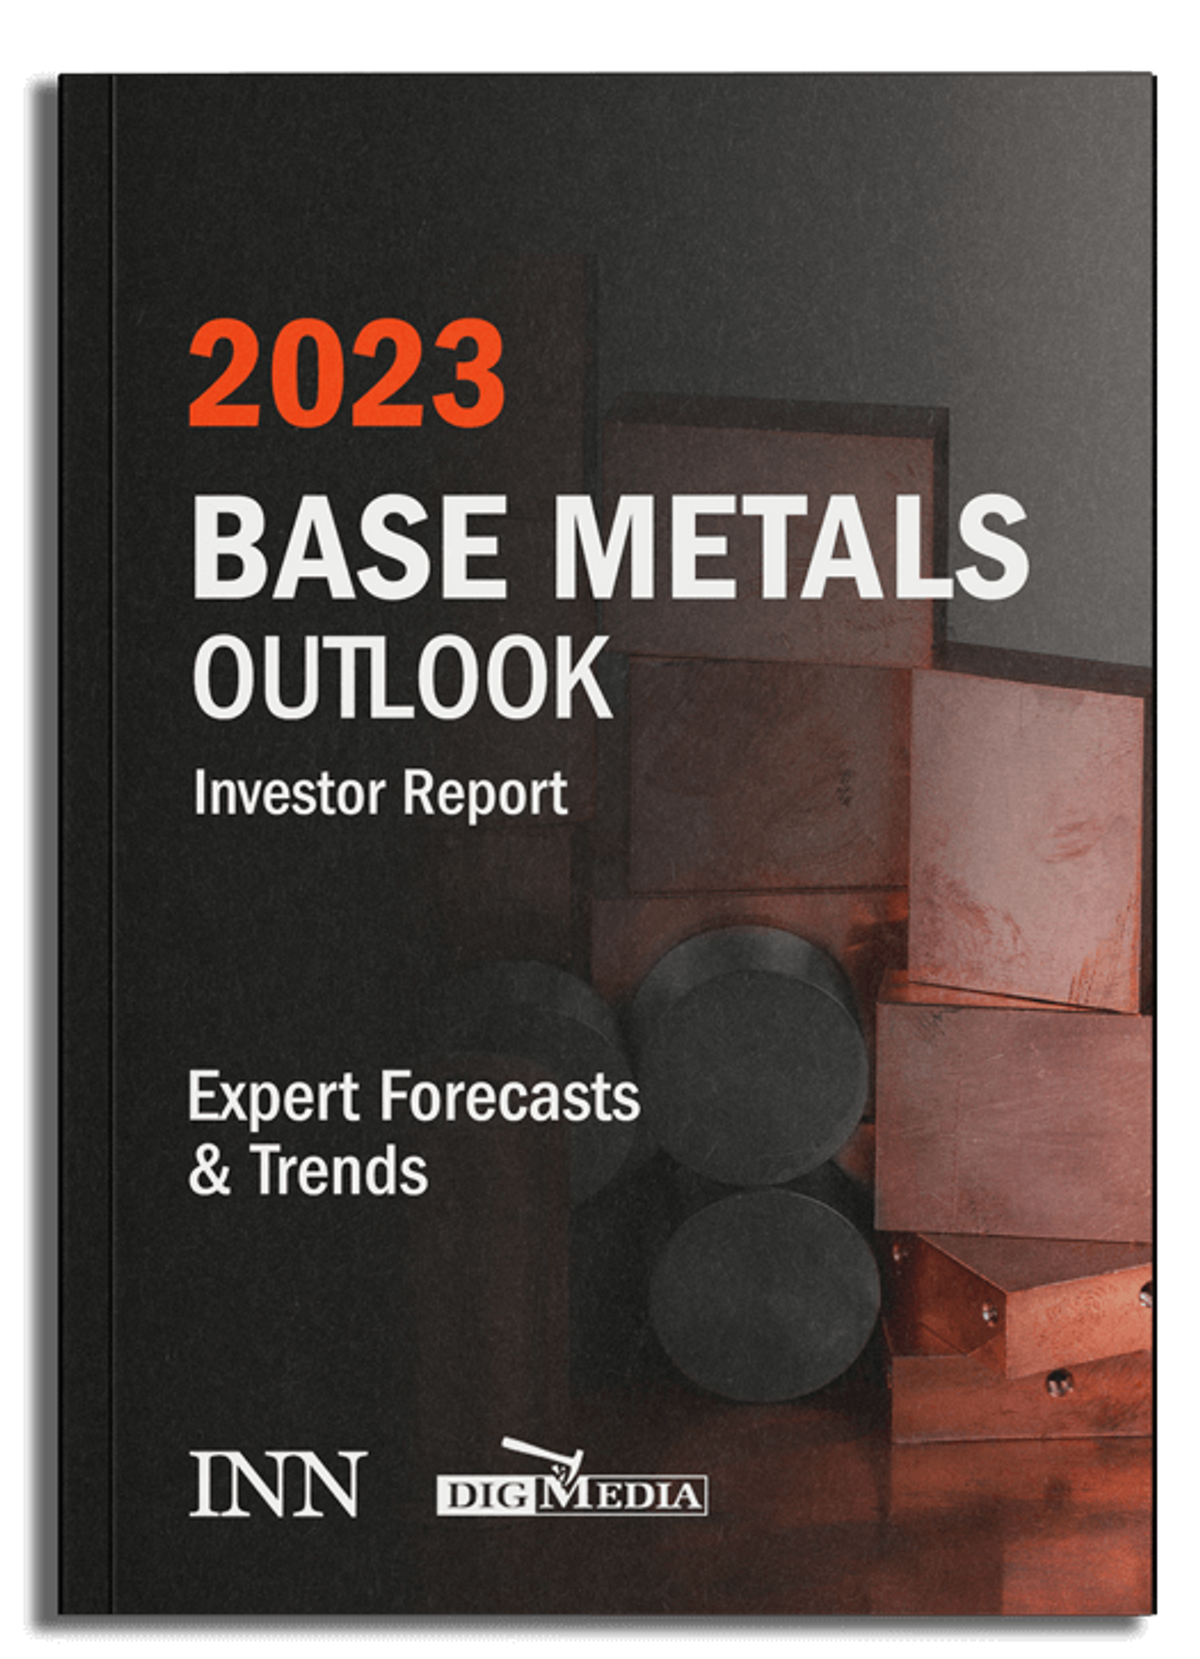 2023 Base Metals Outlook Report.